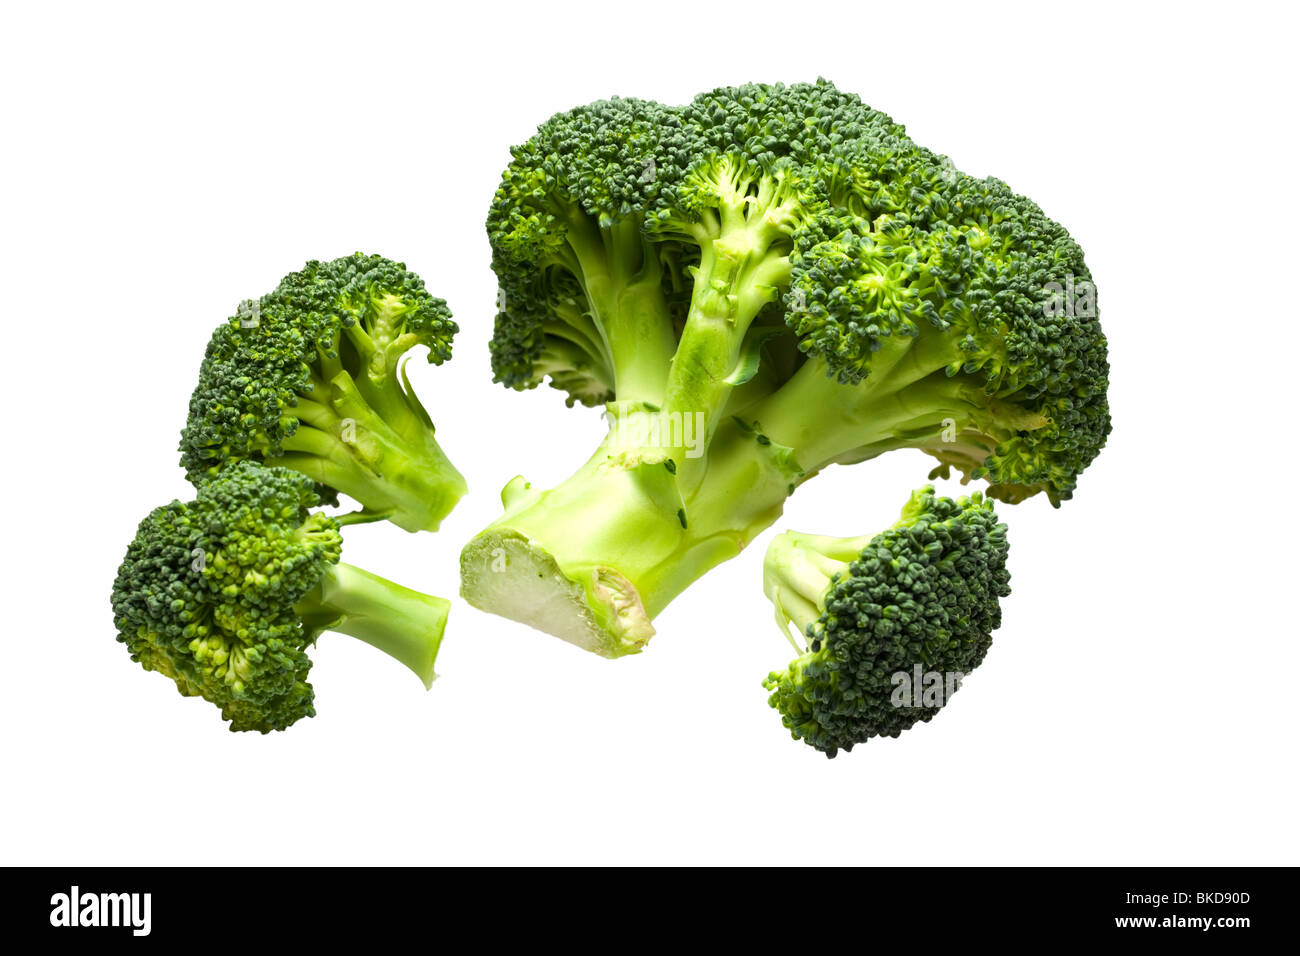 Broccoli on white Stock Photo